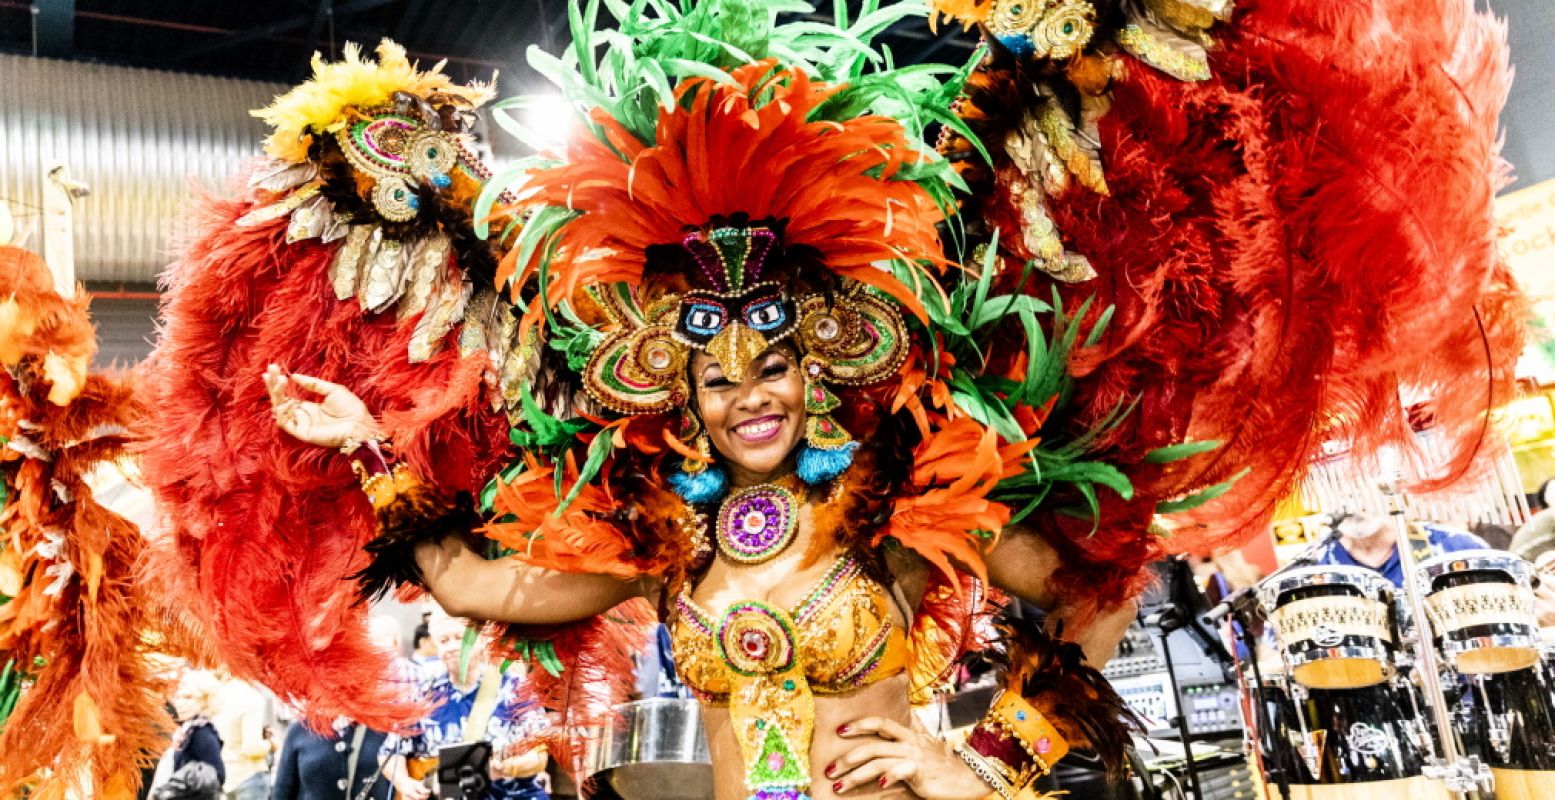 Ontmoet het tropisch carnaval van Brazilië op de Vakantiebeurs. Foto: Vakantiebeurs.